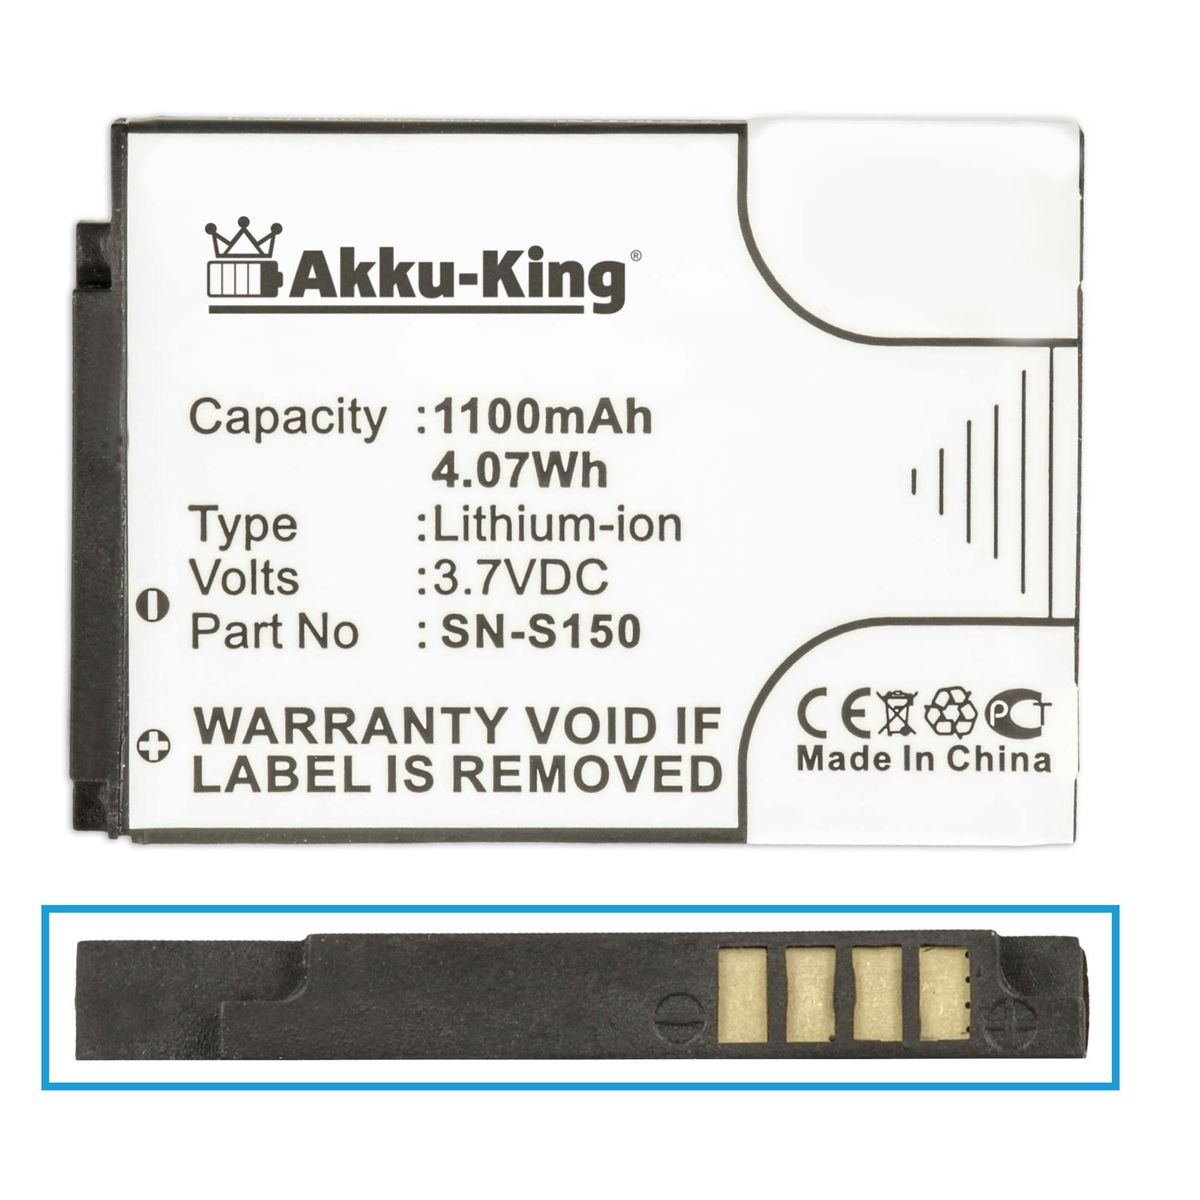 Geräte-Akku, Akku Philips AKKU-KING 3.7 1100mAh Li-Ion kompatibel N-S150 mit Volt,